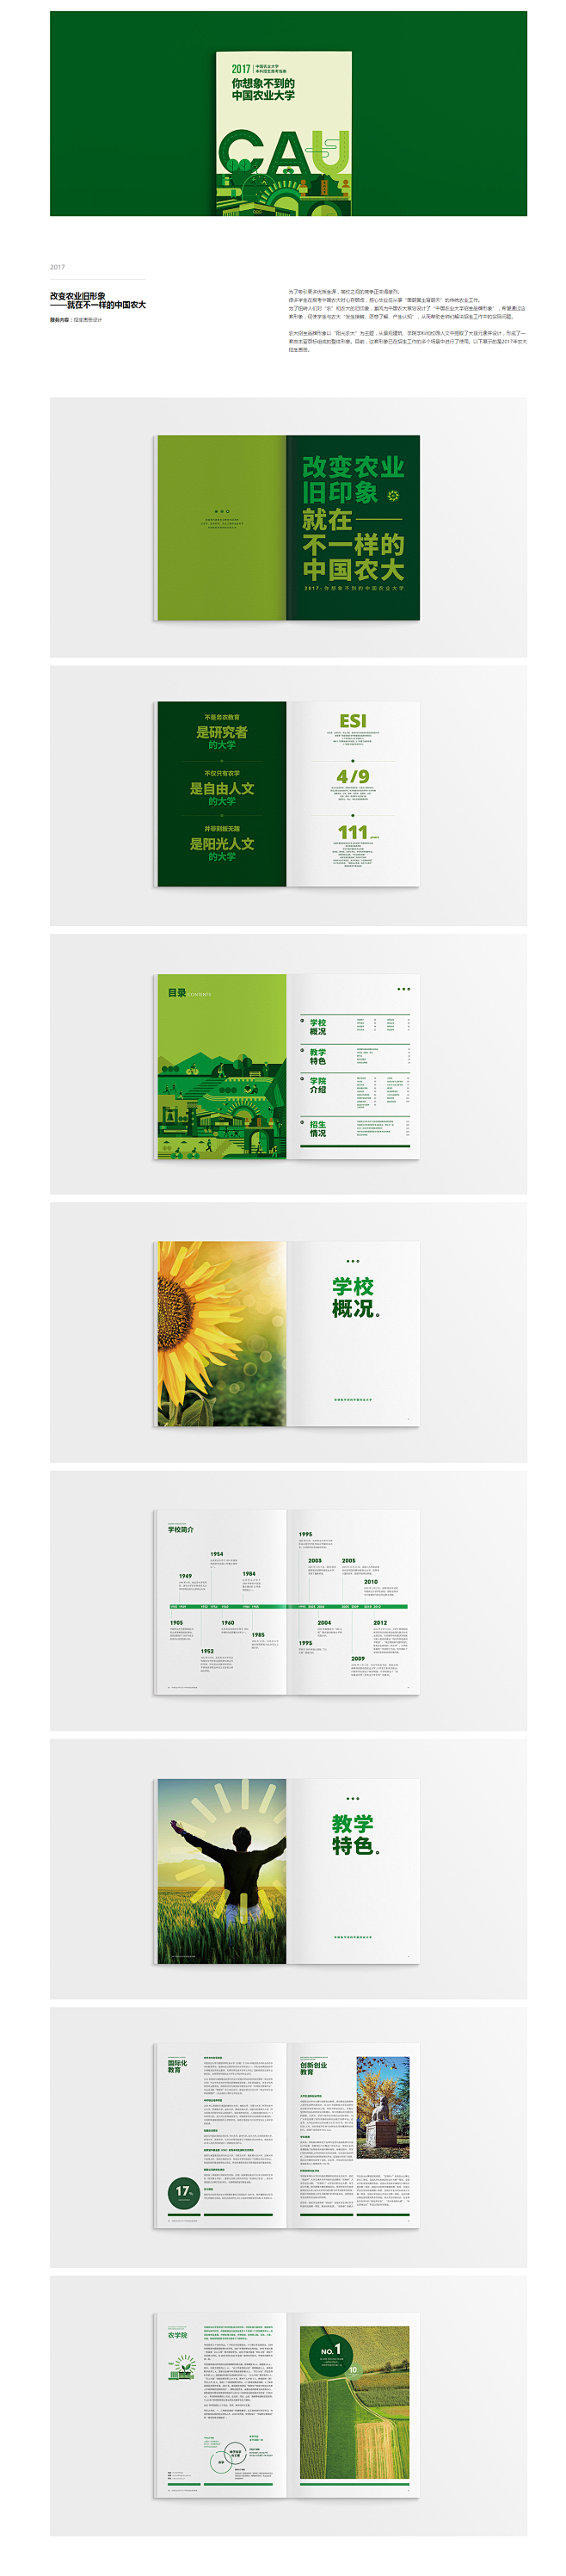 中国农业大学招生画册设计 招生画册设计 ...